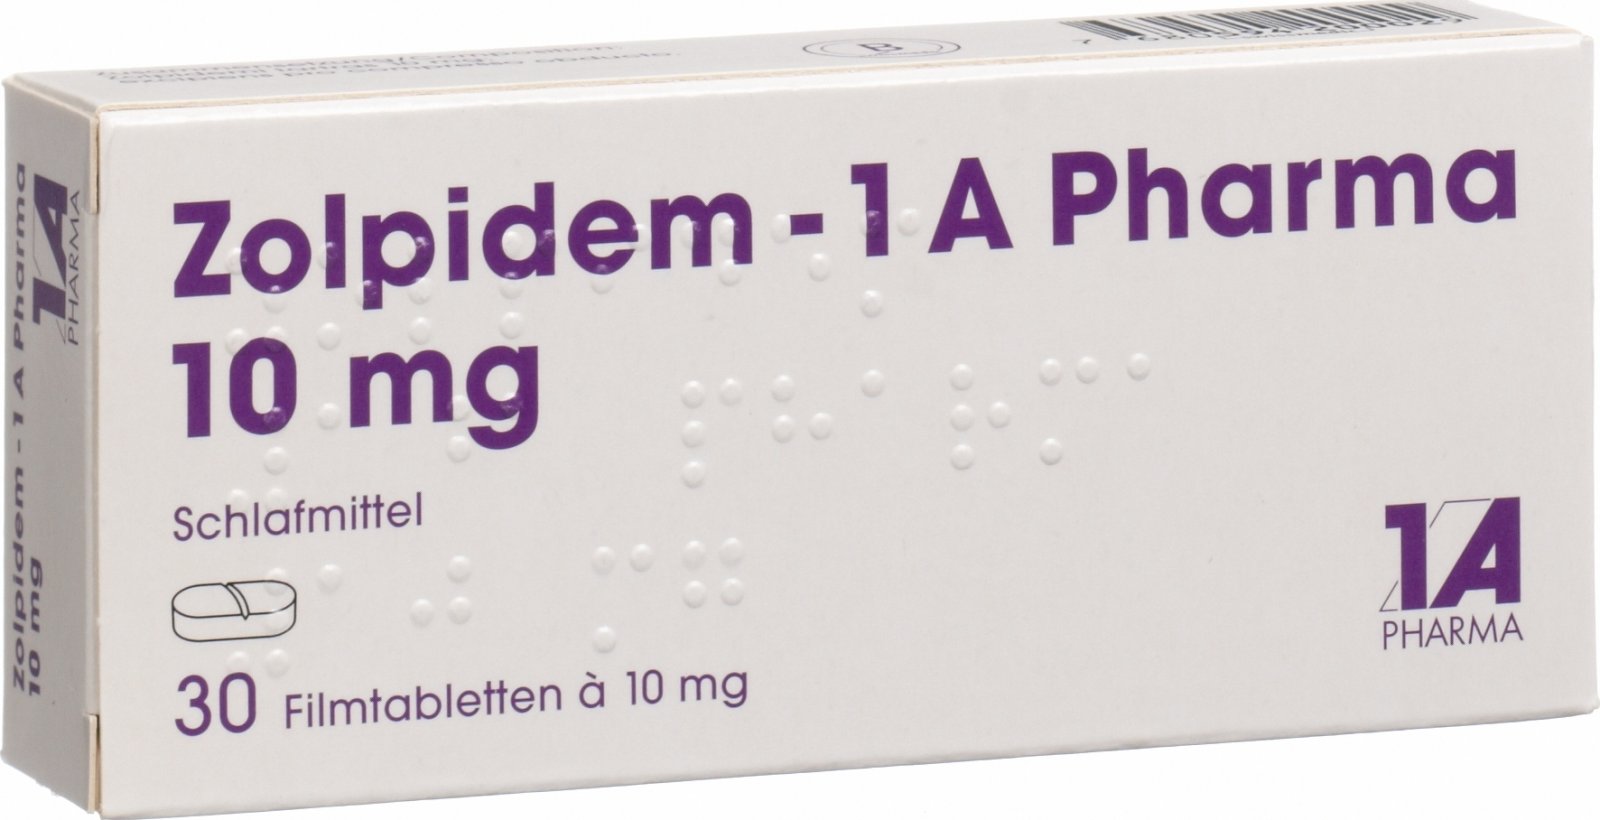 Zolpidem 1a Pharma Filmtabletten 10mg 30 Stück in der Adler Apotheke